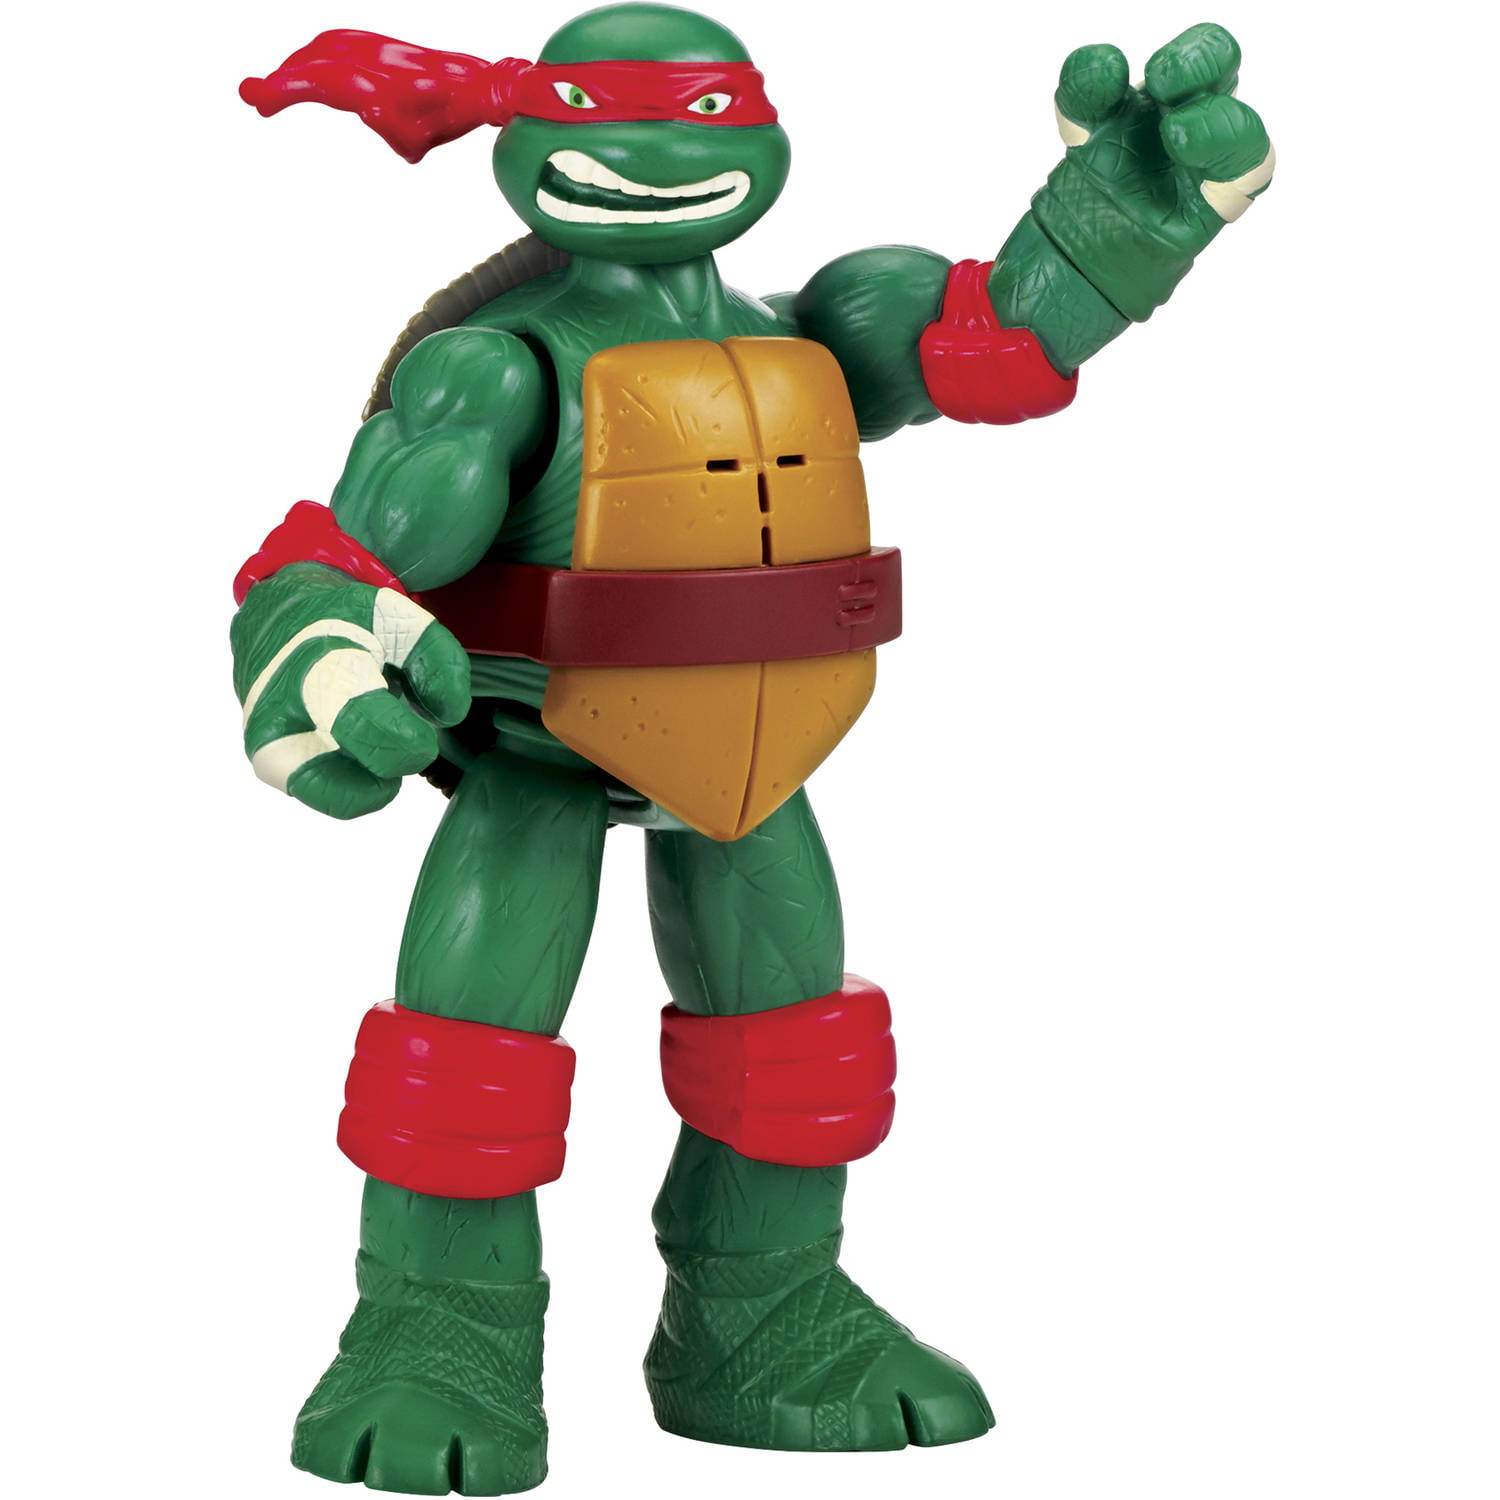 Teenage Mutant Ninja Turtles Ninja Shouts Figure - Raphael